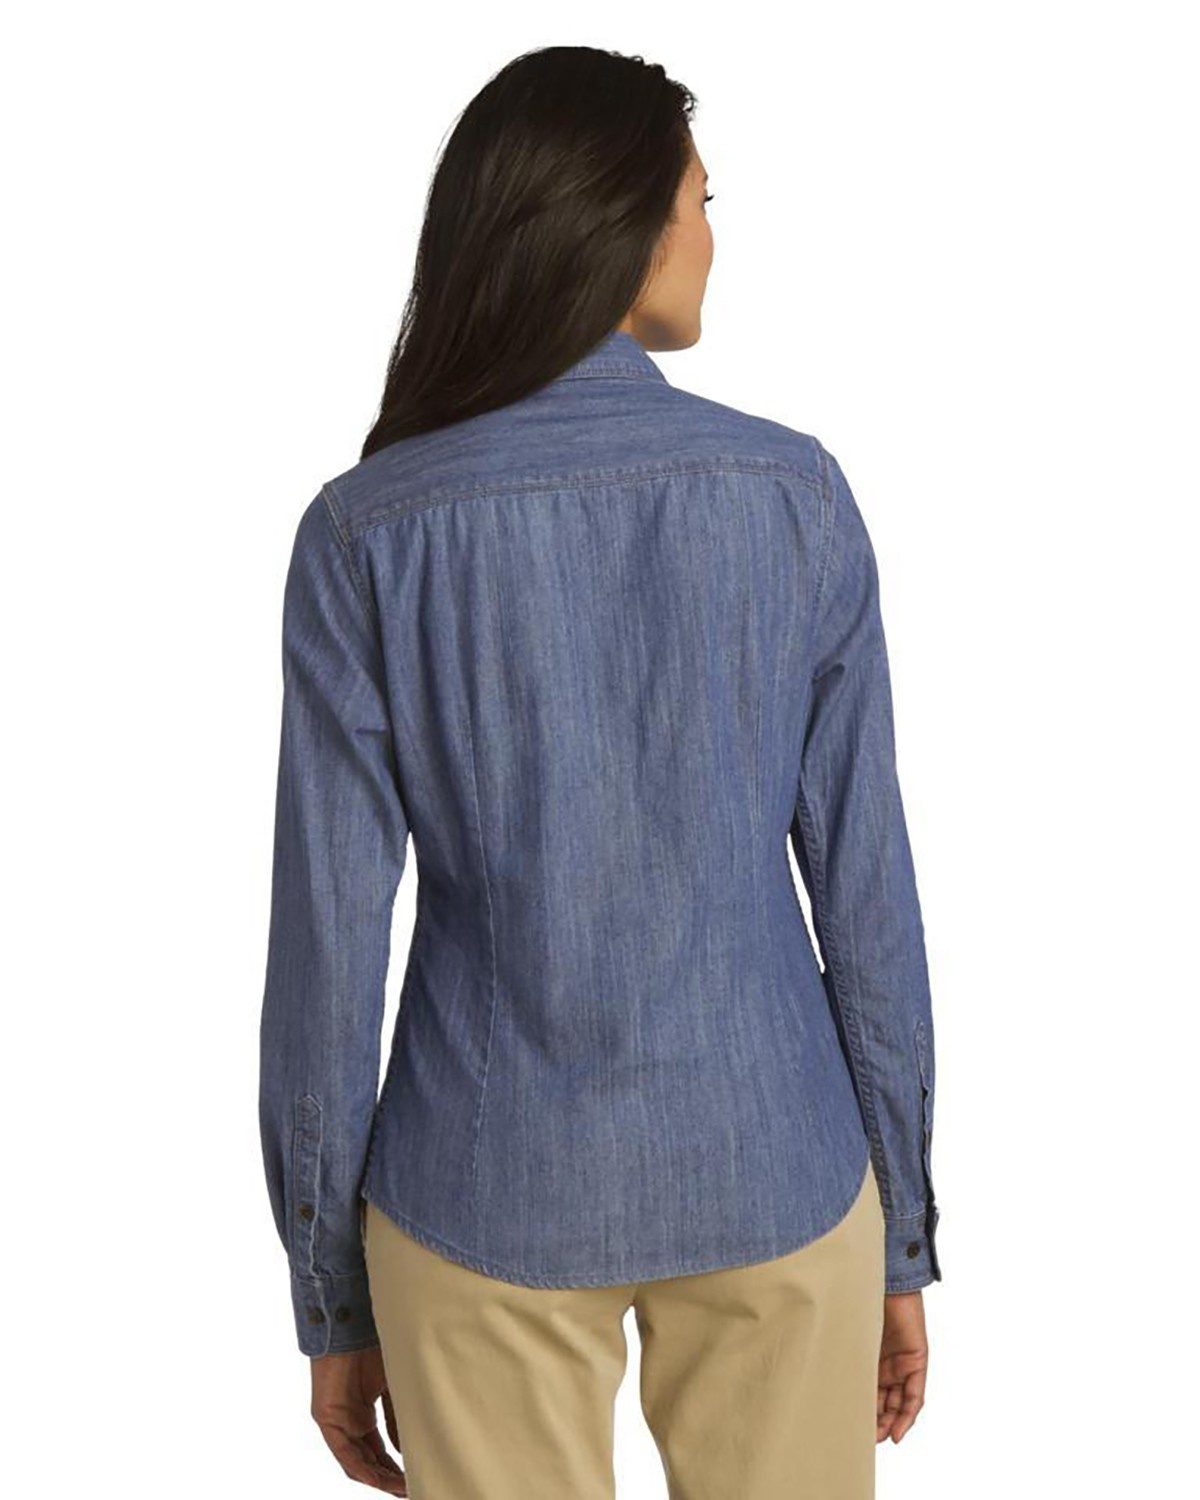 'Port Authority L652 Ladies Patch Pockets Denim Shirt'